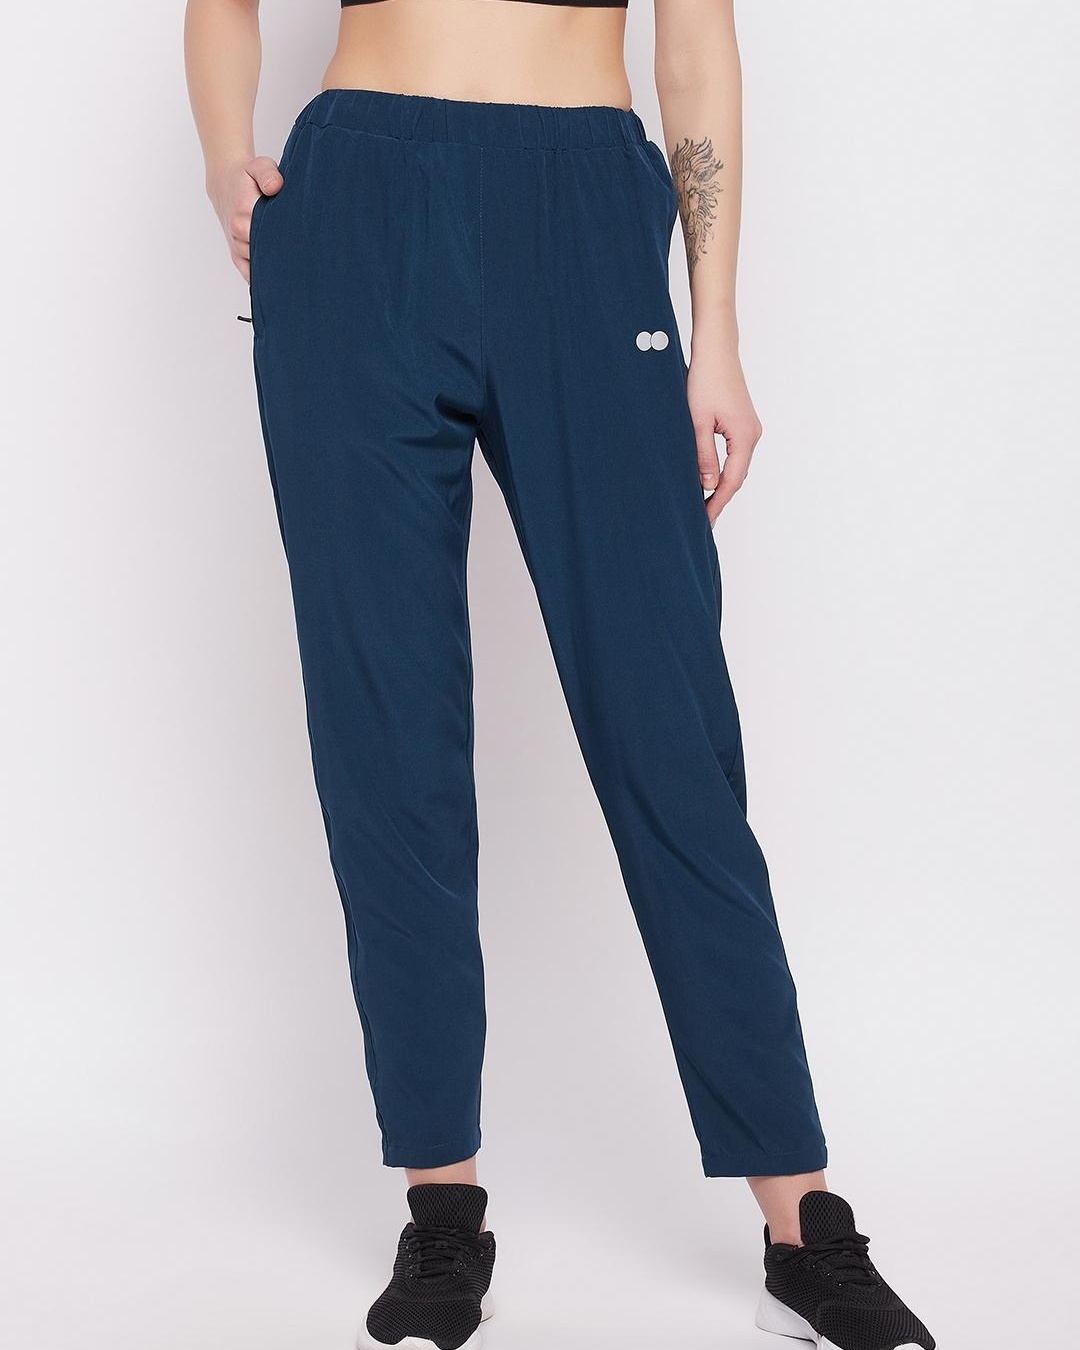 Buy Clovia Women's Blue Activewear Track Pants Online at Bewakoof